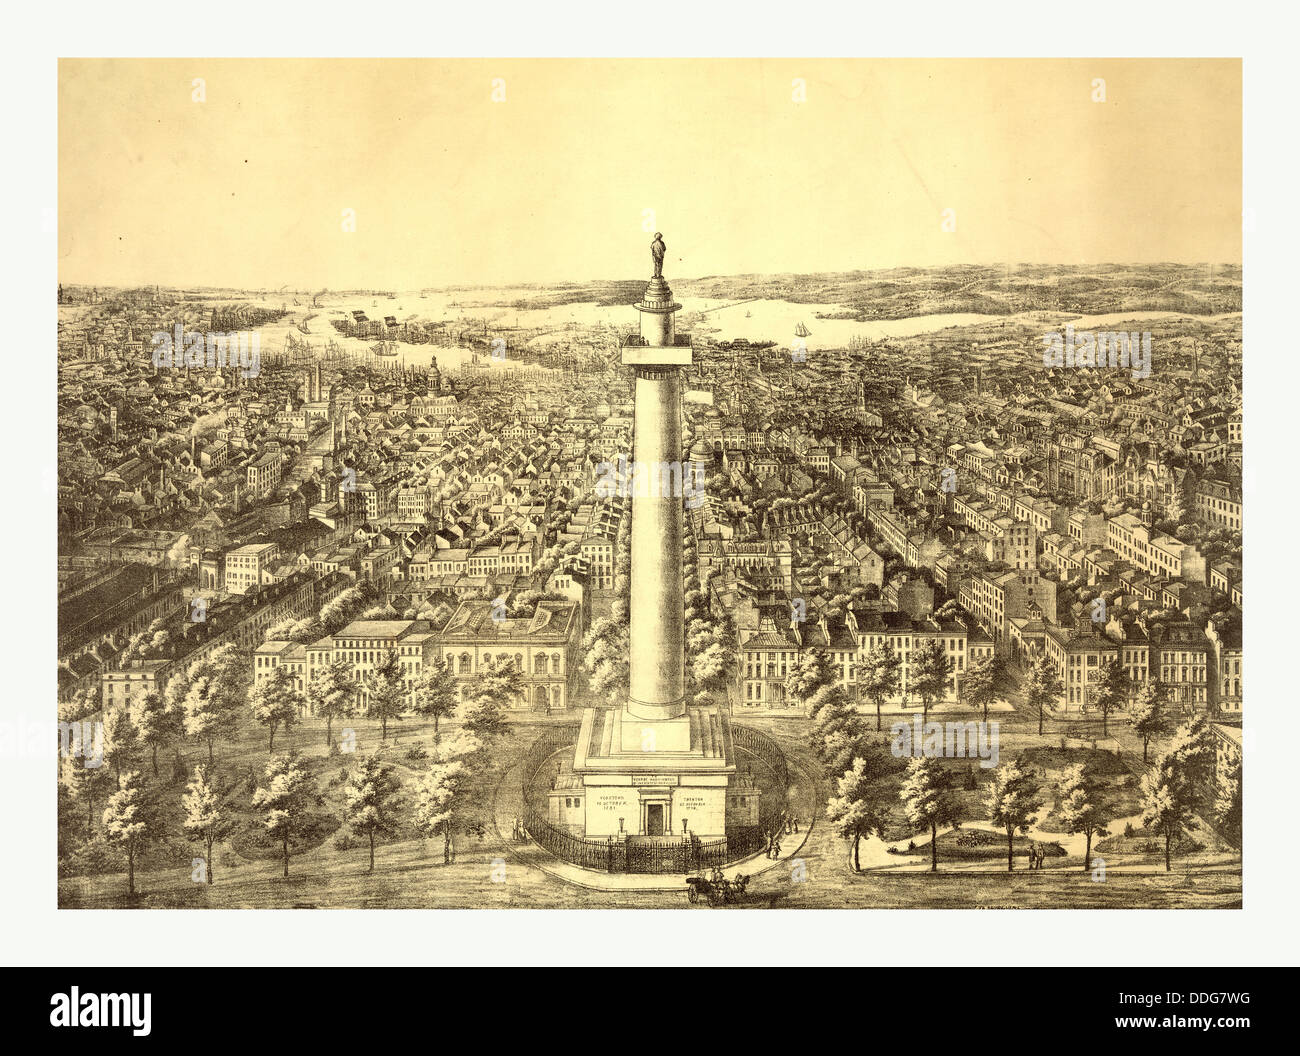 La ville de ville de Baltimore, au Maryland en 1880 Vue du Washington Monument à A. sud Sachse & Co. lithographes, NOUS, USA Banque D'Images